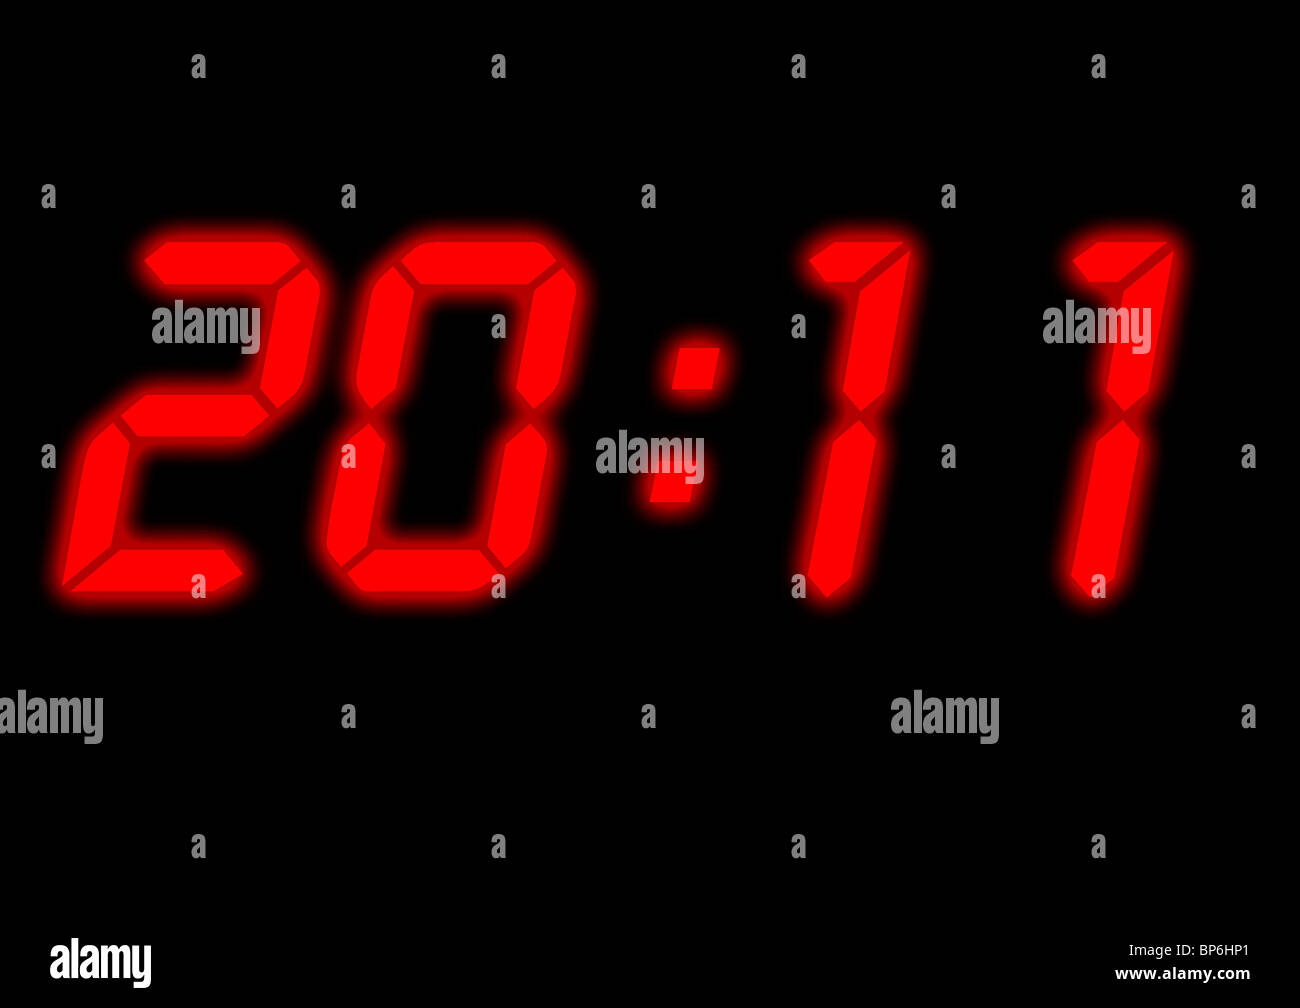 Digitale Uhr auslesen mit der Zeit auf 20:11, d. h. das neue Jahr 2011  festgelegt Stockfotografie - Alamy